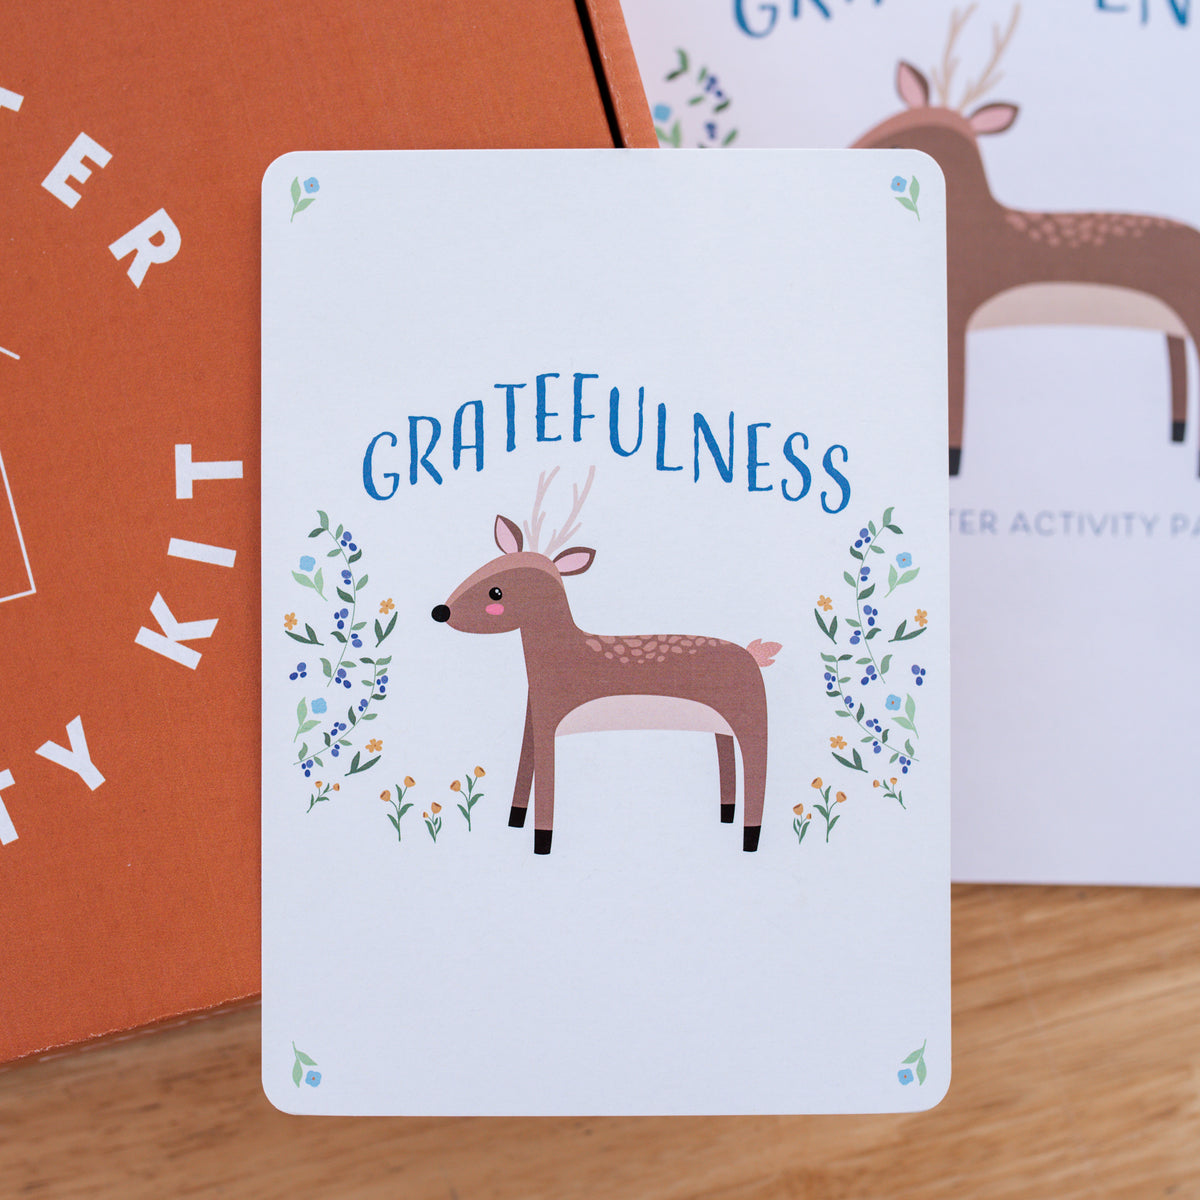 Beginner Gratefulness Kit